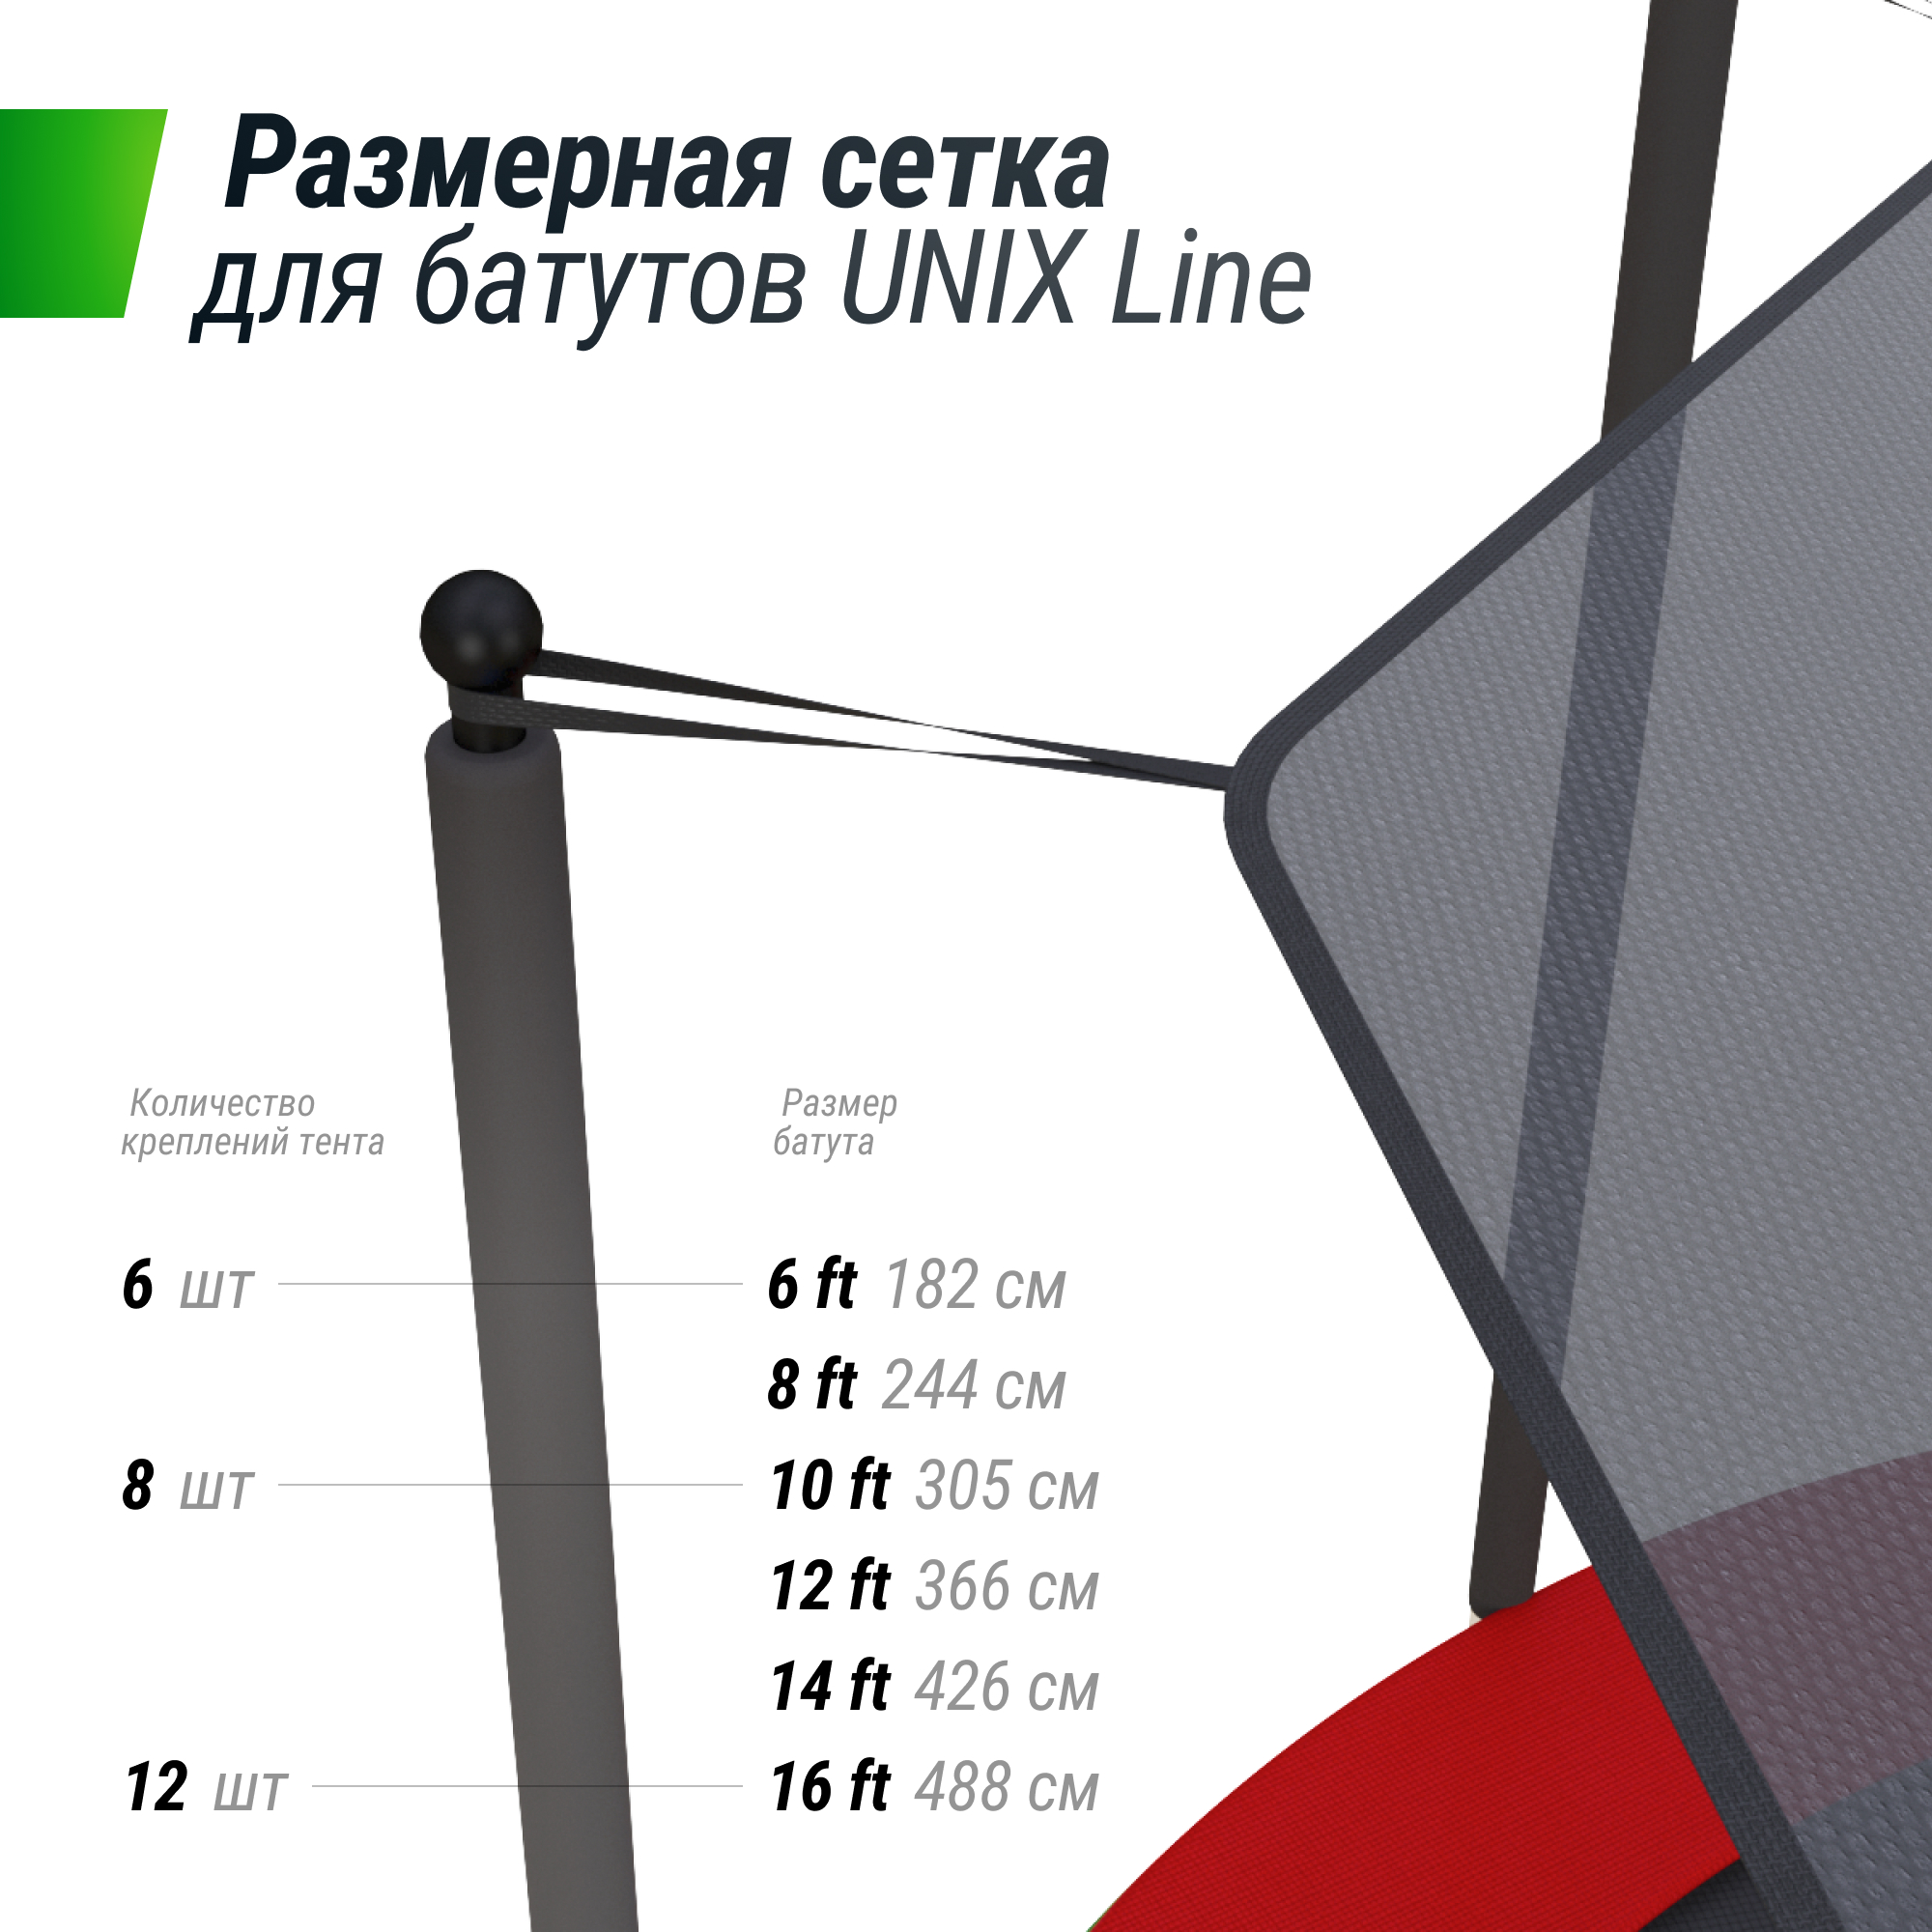 Солнцезащитный тент UNIX Line 182 см (6 ft)